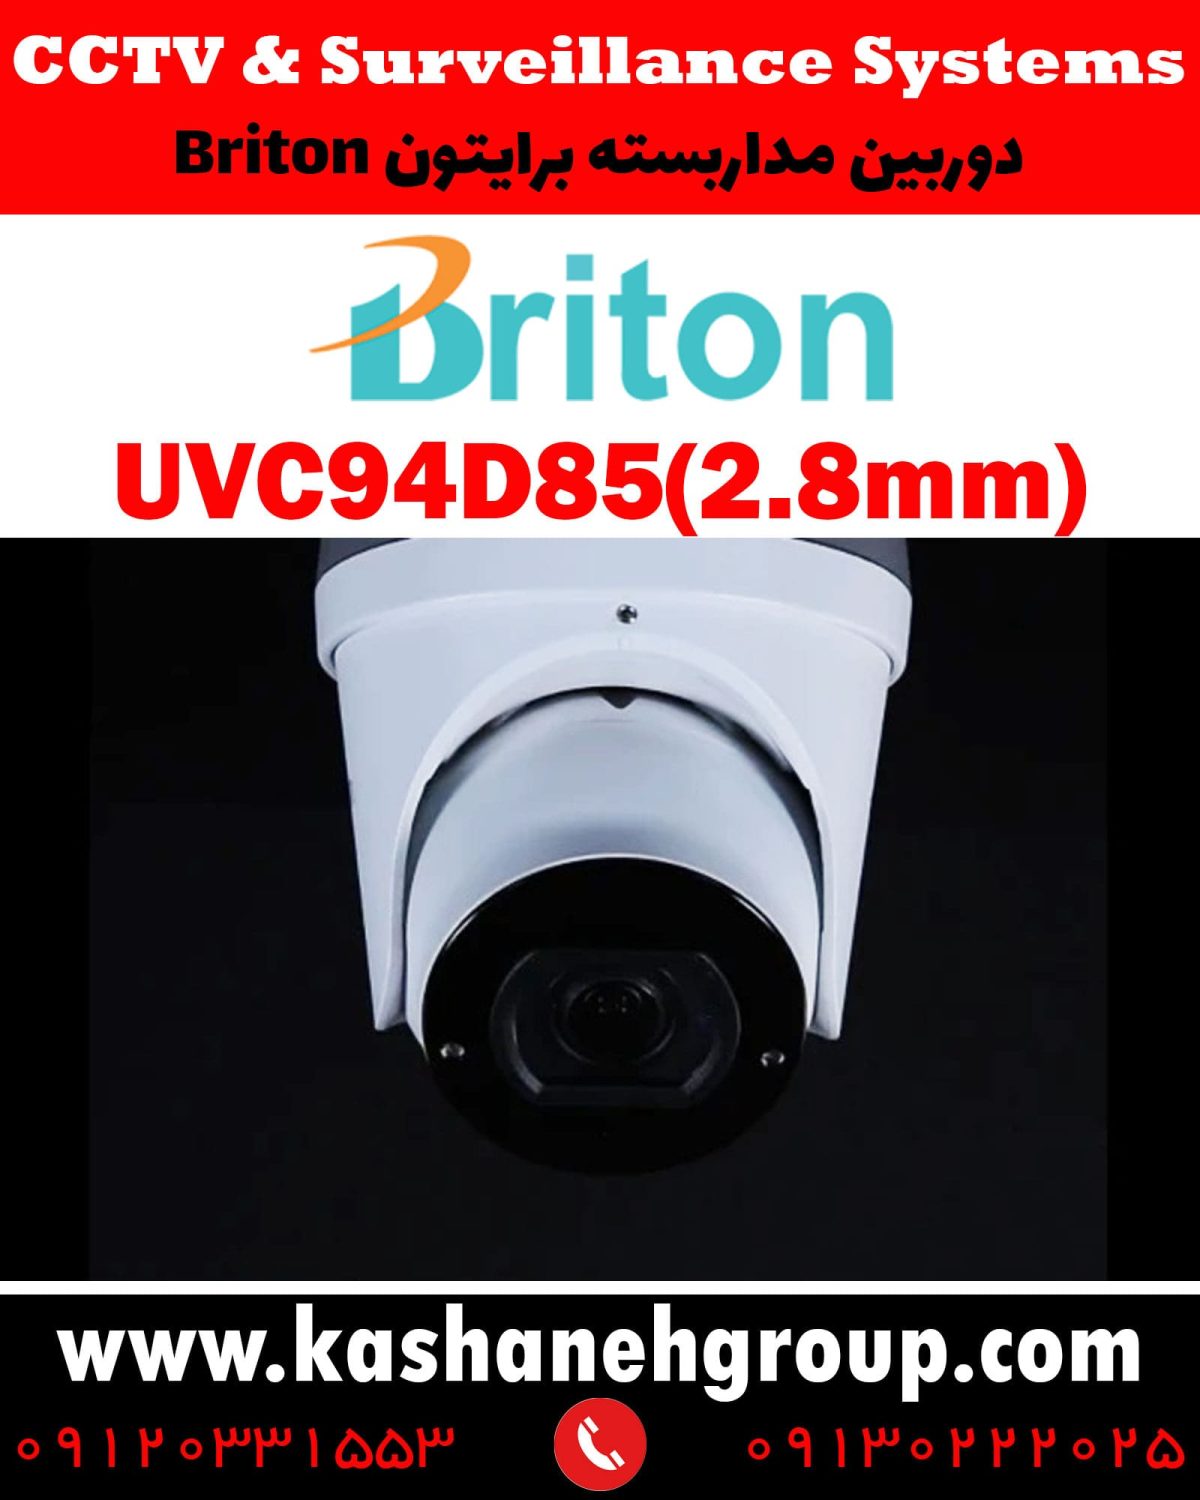 دوربین مداربسته UVC94D85(2.8MM)، دوربین مداربسته برایتون UVC94D85(2.8MM)، دوربین مداربسته Briton UVC94D85(2.8MM)، دوربین برایتون UVC94D85(2.8MM)، قیمت دوربین برایتون، نرم افزار برایتون، تعمیر دوربین برایتون، نمایندگی برایتون، نماینده برایتون، قیمت دوربین برایتون، مشخصات دوربین UVC94D85(2.8MM)، قیمت دوربین برایتون UVC94D85(2.8MM)، قیمت دوربین UVC94D85(2.8MM) برایتون، پک دوربین برایتون، پک دوربین مداربسته برایتون، دوربین Briton، دوربین مداربسته برایتون Briton UVC94D85(2.8MM) ، نماینده دوربین Briton، نمایندگی دوربین Briton، نرم افزار موبایل دوربین مداربسته Briton، دوربین مداربسته، قیمت دوربین مداربسته، دوربین مدار بسته، خرید دوربین مداربسته، کابل دوربین مداربسته، پک دوربین مداربسته، دوربین مداربسته سیم کارت خور، دوربین مداربسته لامپی، آداپتور دوربین مداربسته، دوربین مداربسته شیائومی، بهترین مارک دوربین مداربسته، بهترین نرم افزار انتقال تصویر دوربین مداربسته روی موبایل، بهترین مارک دوربین مداربسته، دوربین برایتون، دوربین مداربسته در اصفهان، قیمت دوربین مداربسته در اصفهان، نماینده برایتون در اصفهان، نماینده دوربین برایتون اصفهان، نصب دوربین مداربسته در اصفهان، تعمیر دوربین مداربسته در اصفهان، شرکت دوربین در اصفهان